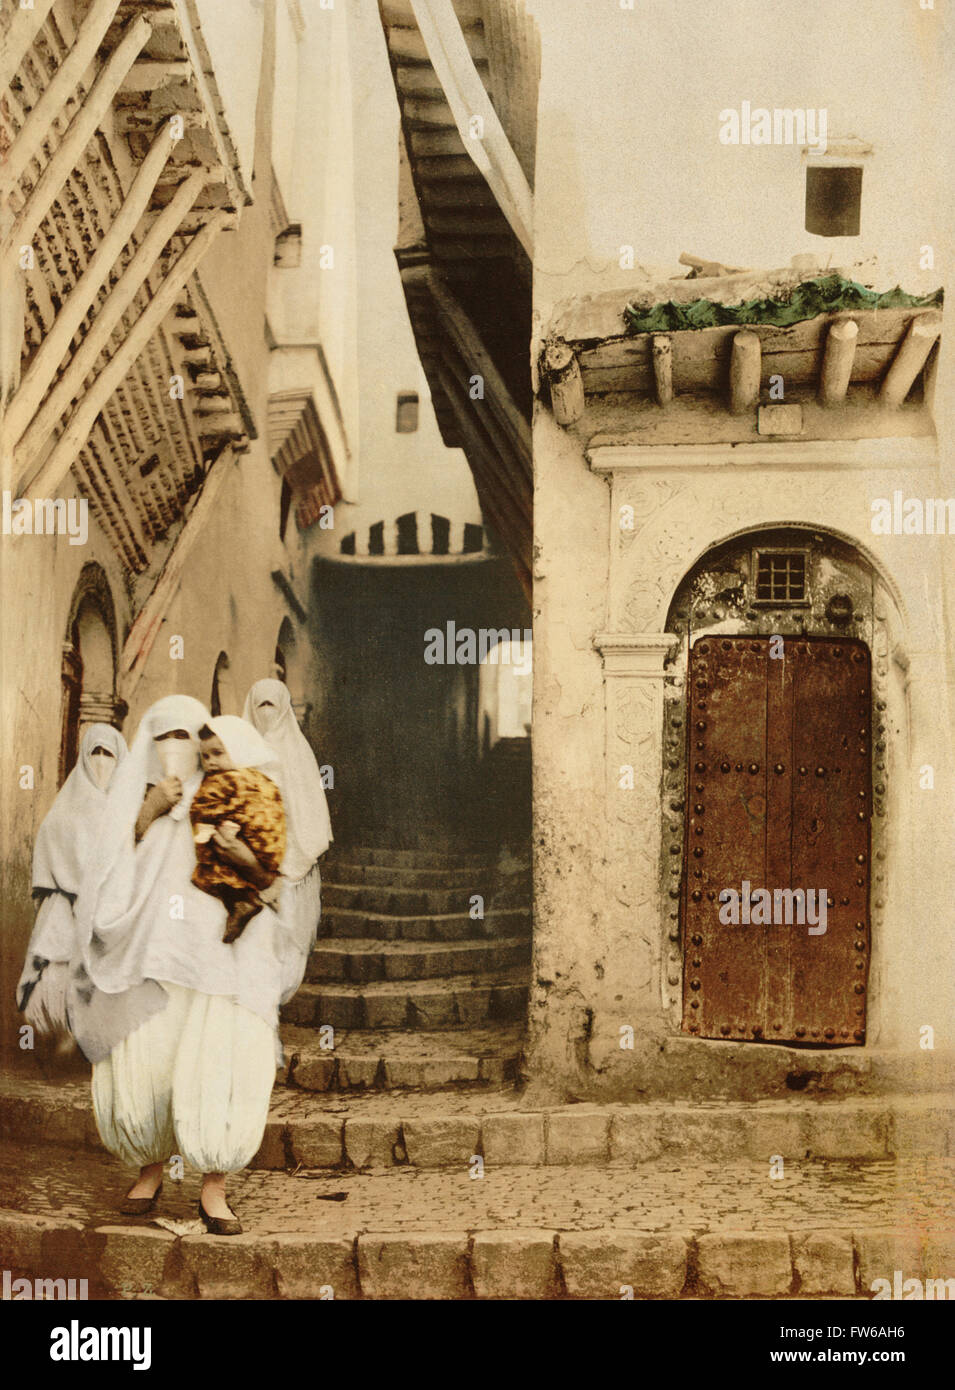 Les femmes voilées avec enfant de la rue, les chameaux, Alger, Algérie, impression Photochrome, vers 1900 Banque D'Images